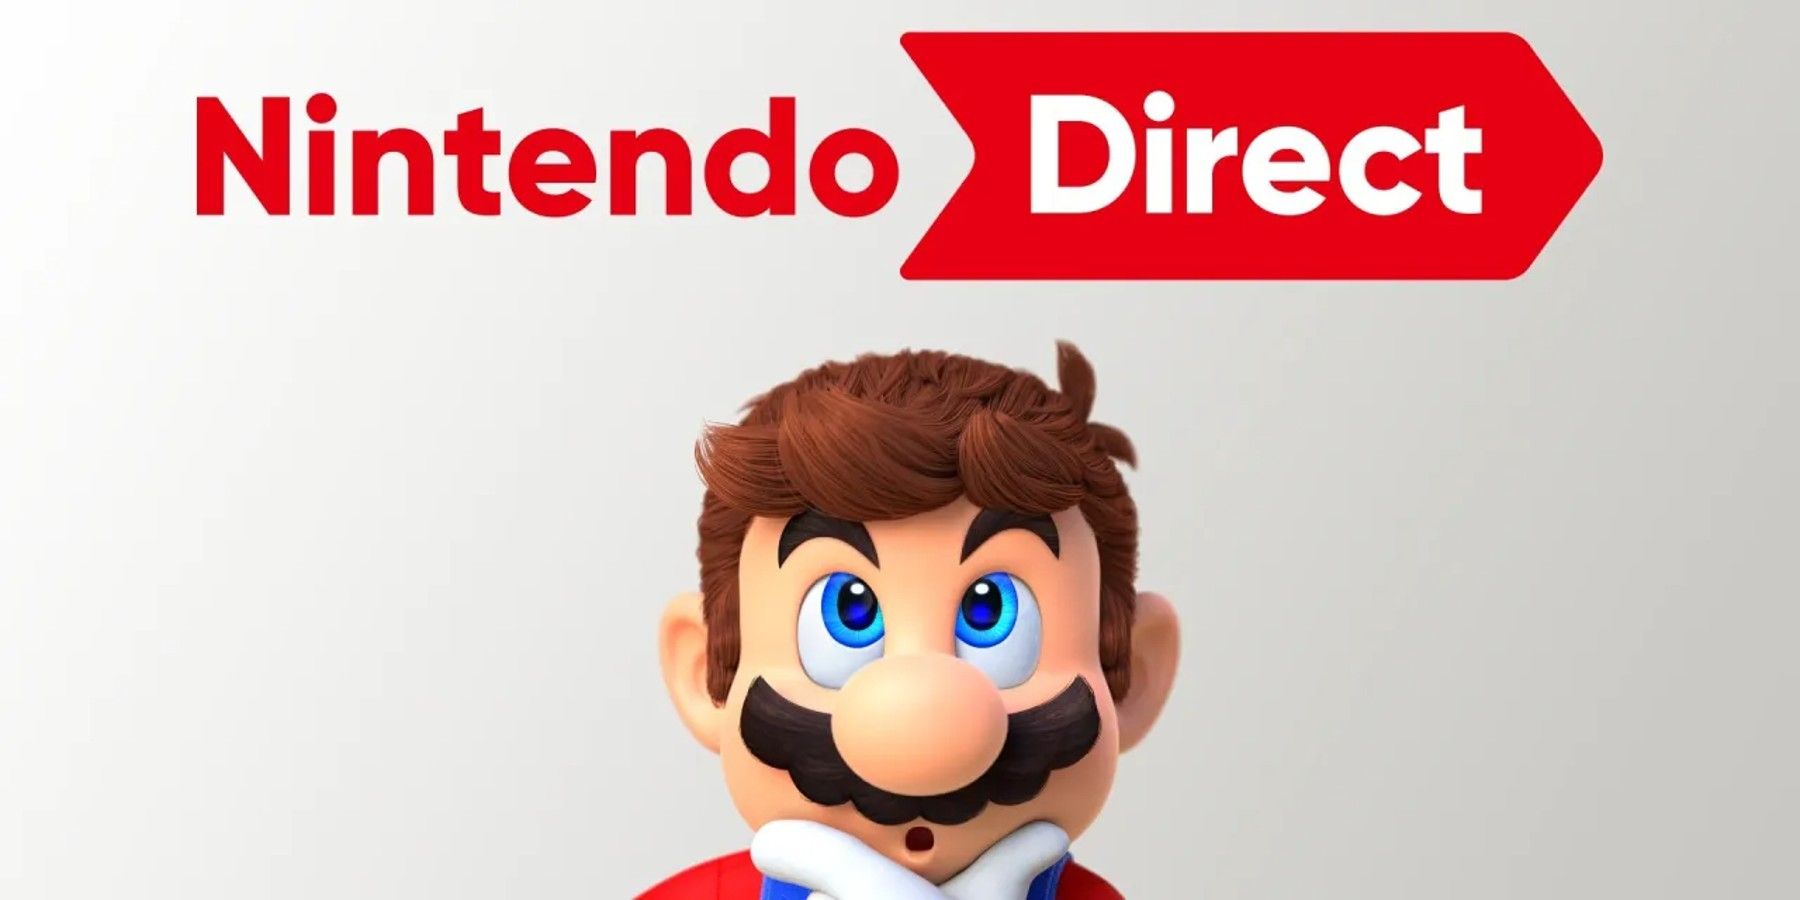 Nintendo-Direct-E3-2022-Rumor-June-29th-Summer-Game-Fest